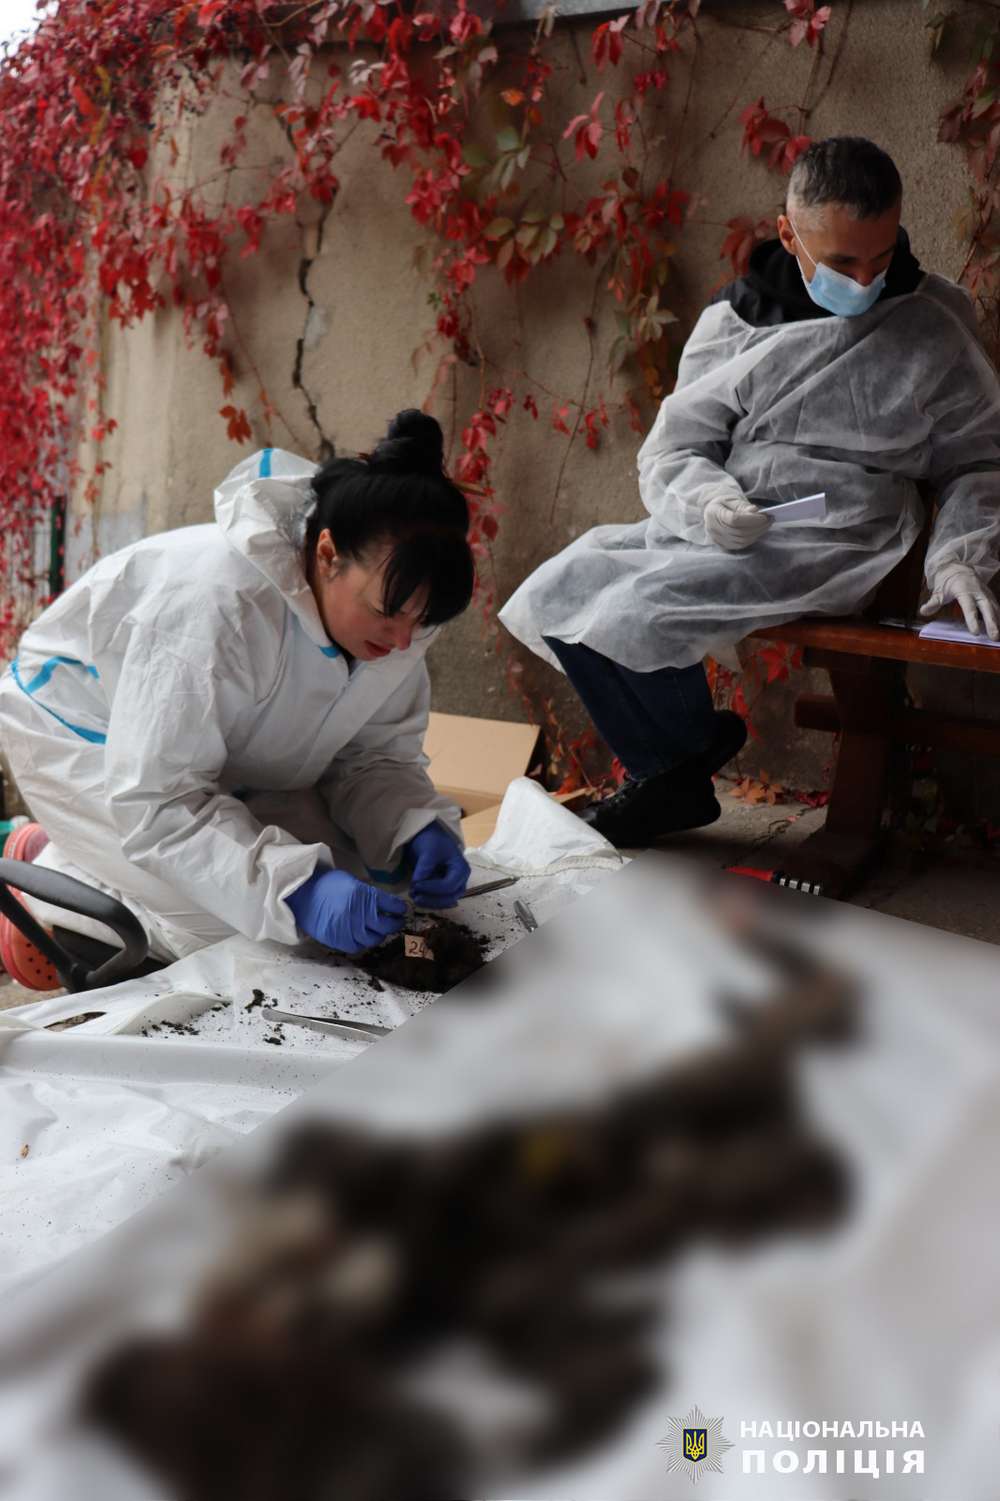 Ідентифіковано 48 тіл загиблих у Грозі, ще 7 людей вважаються зниклими безвісти